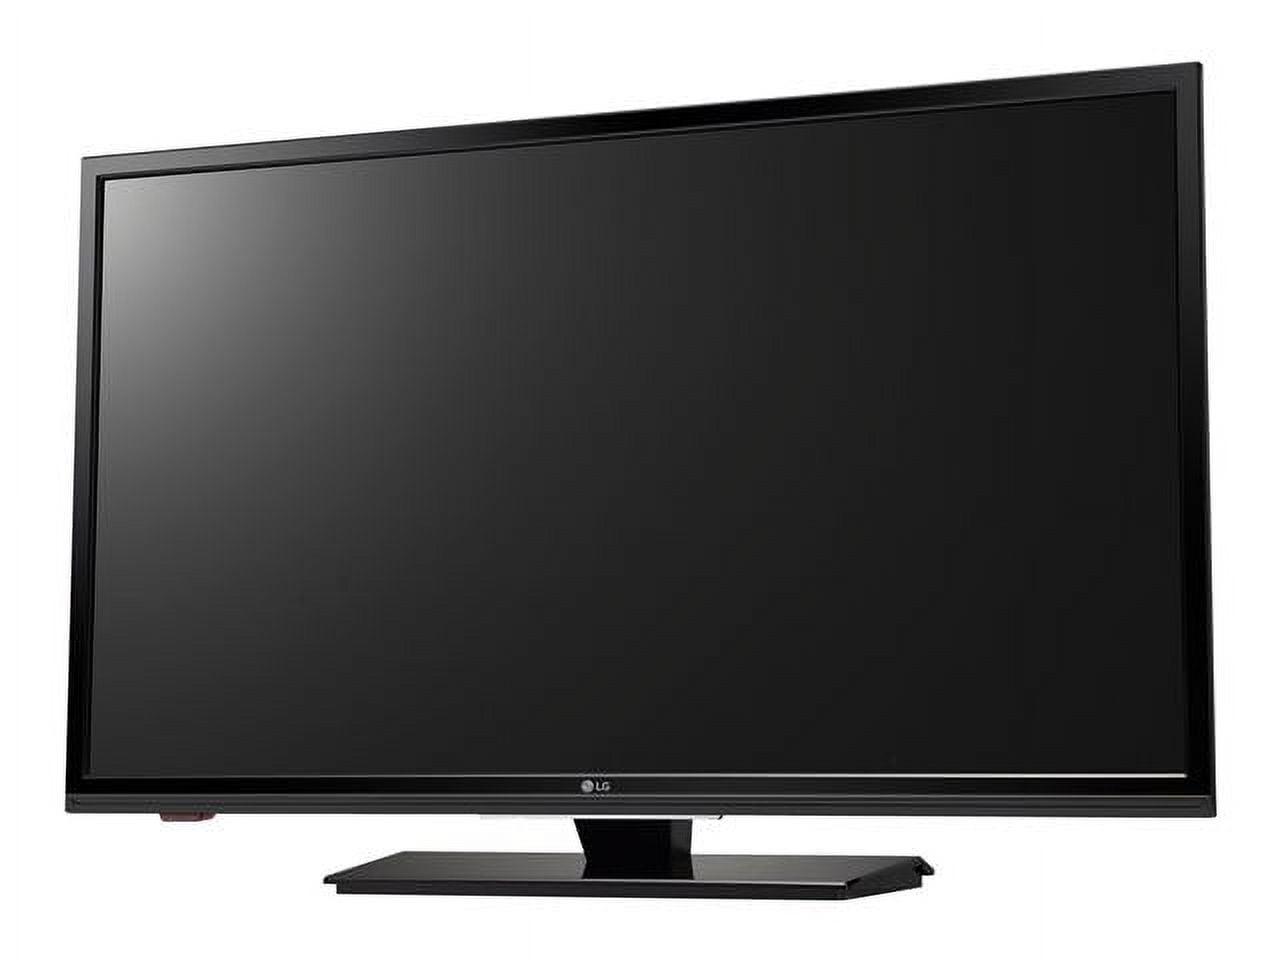 LG 32LF500B: 32 Class (31.5 Diagonal) 720p LED TV